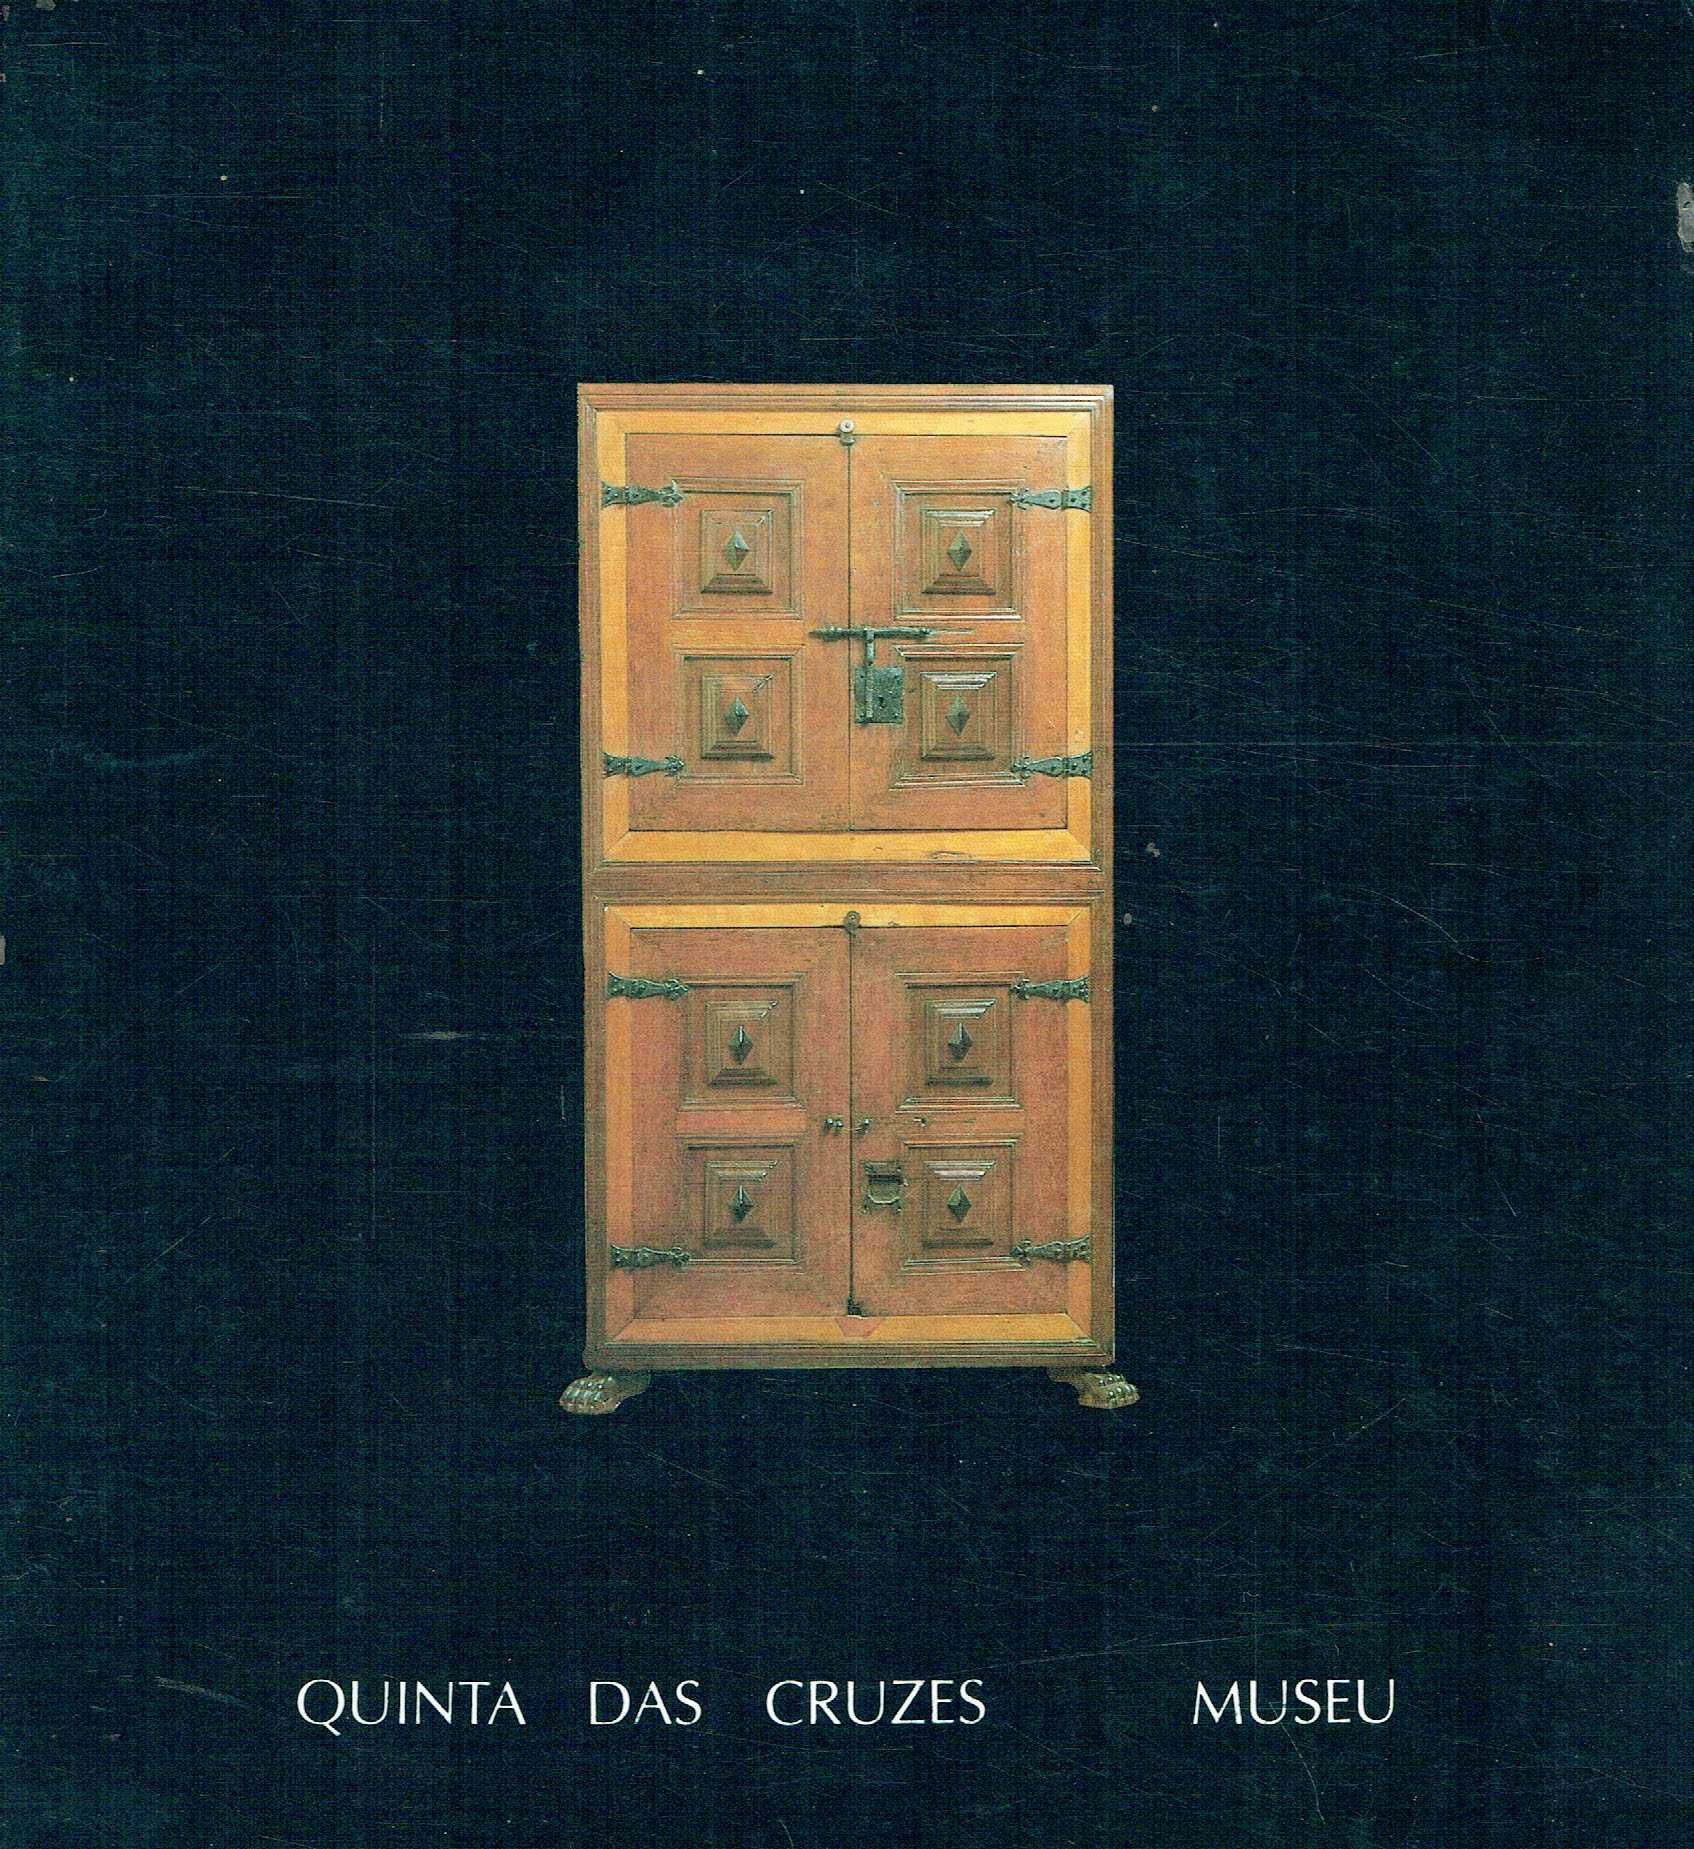 2145

Quinta das Cruzes - Museu